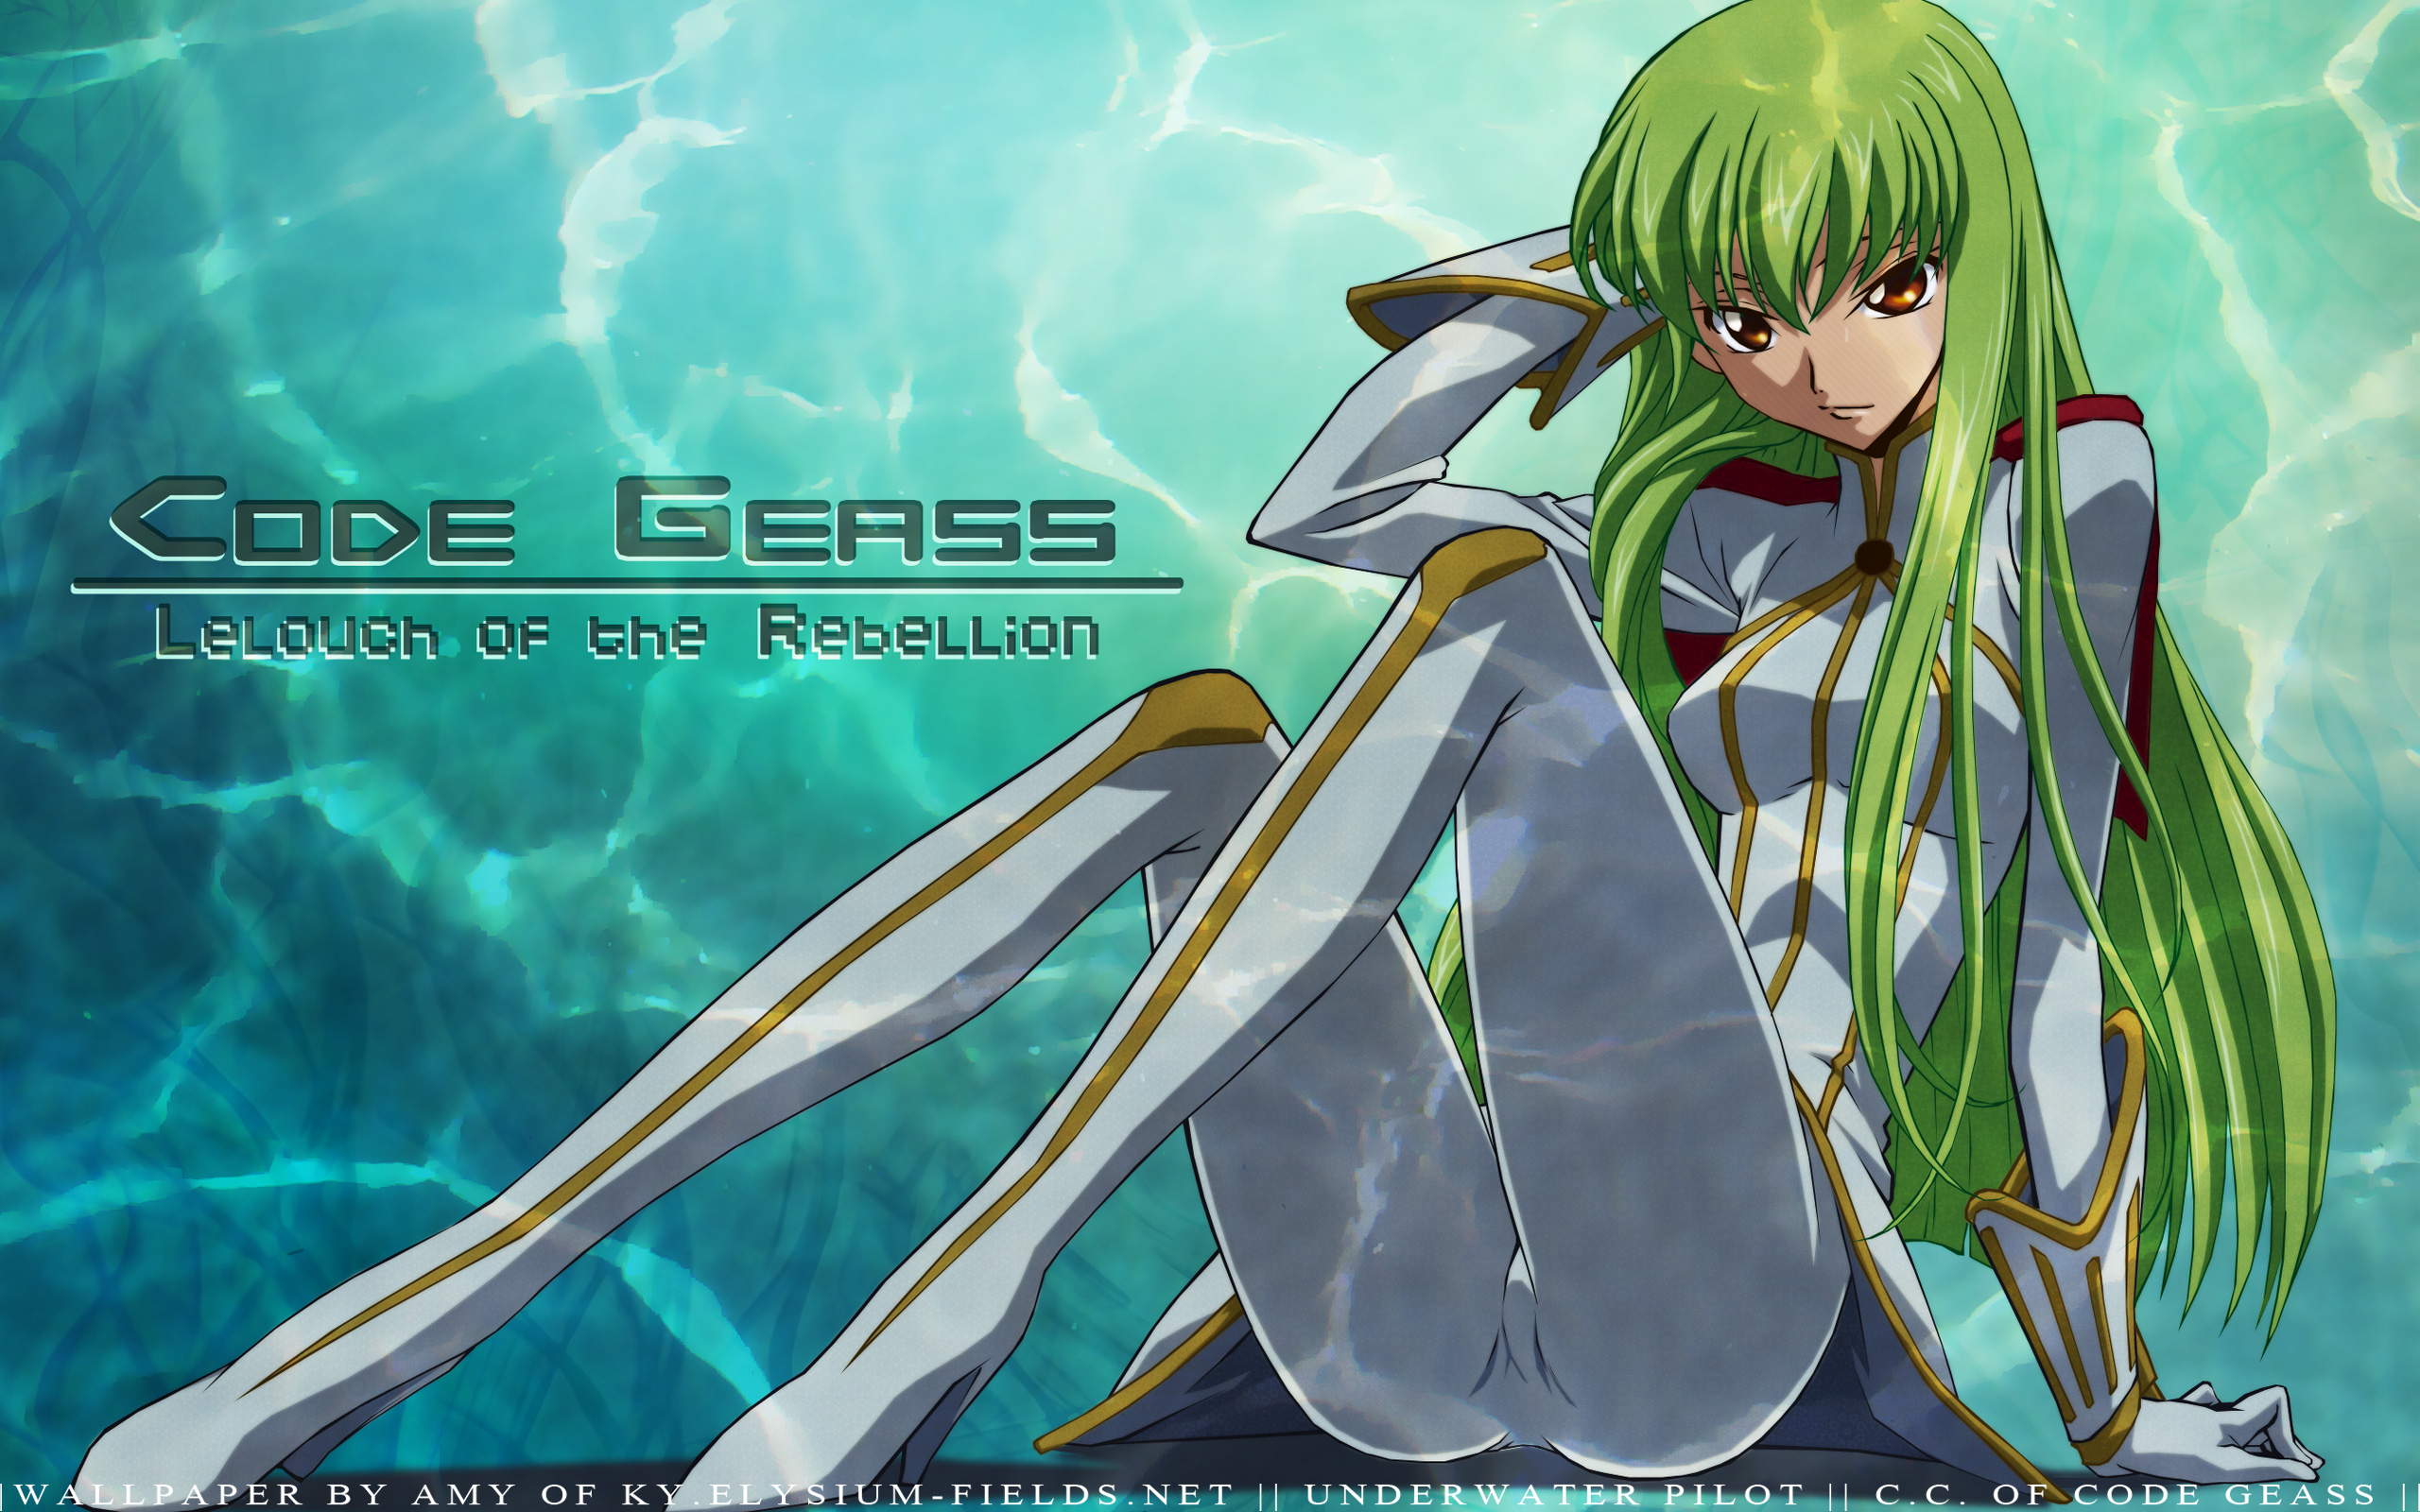 HD wallpaper: code geass cc anime 1920x1080 Anime Code Geass HD Art, C.C.